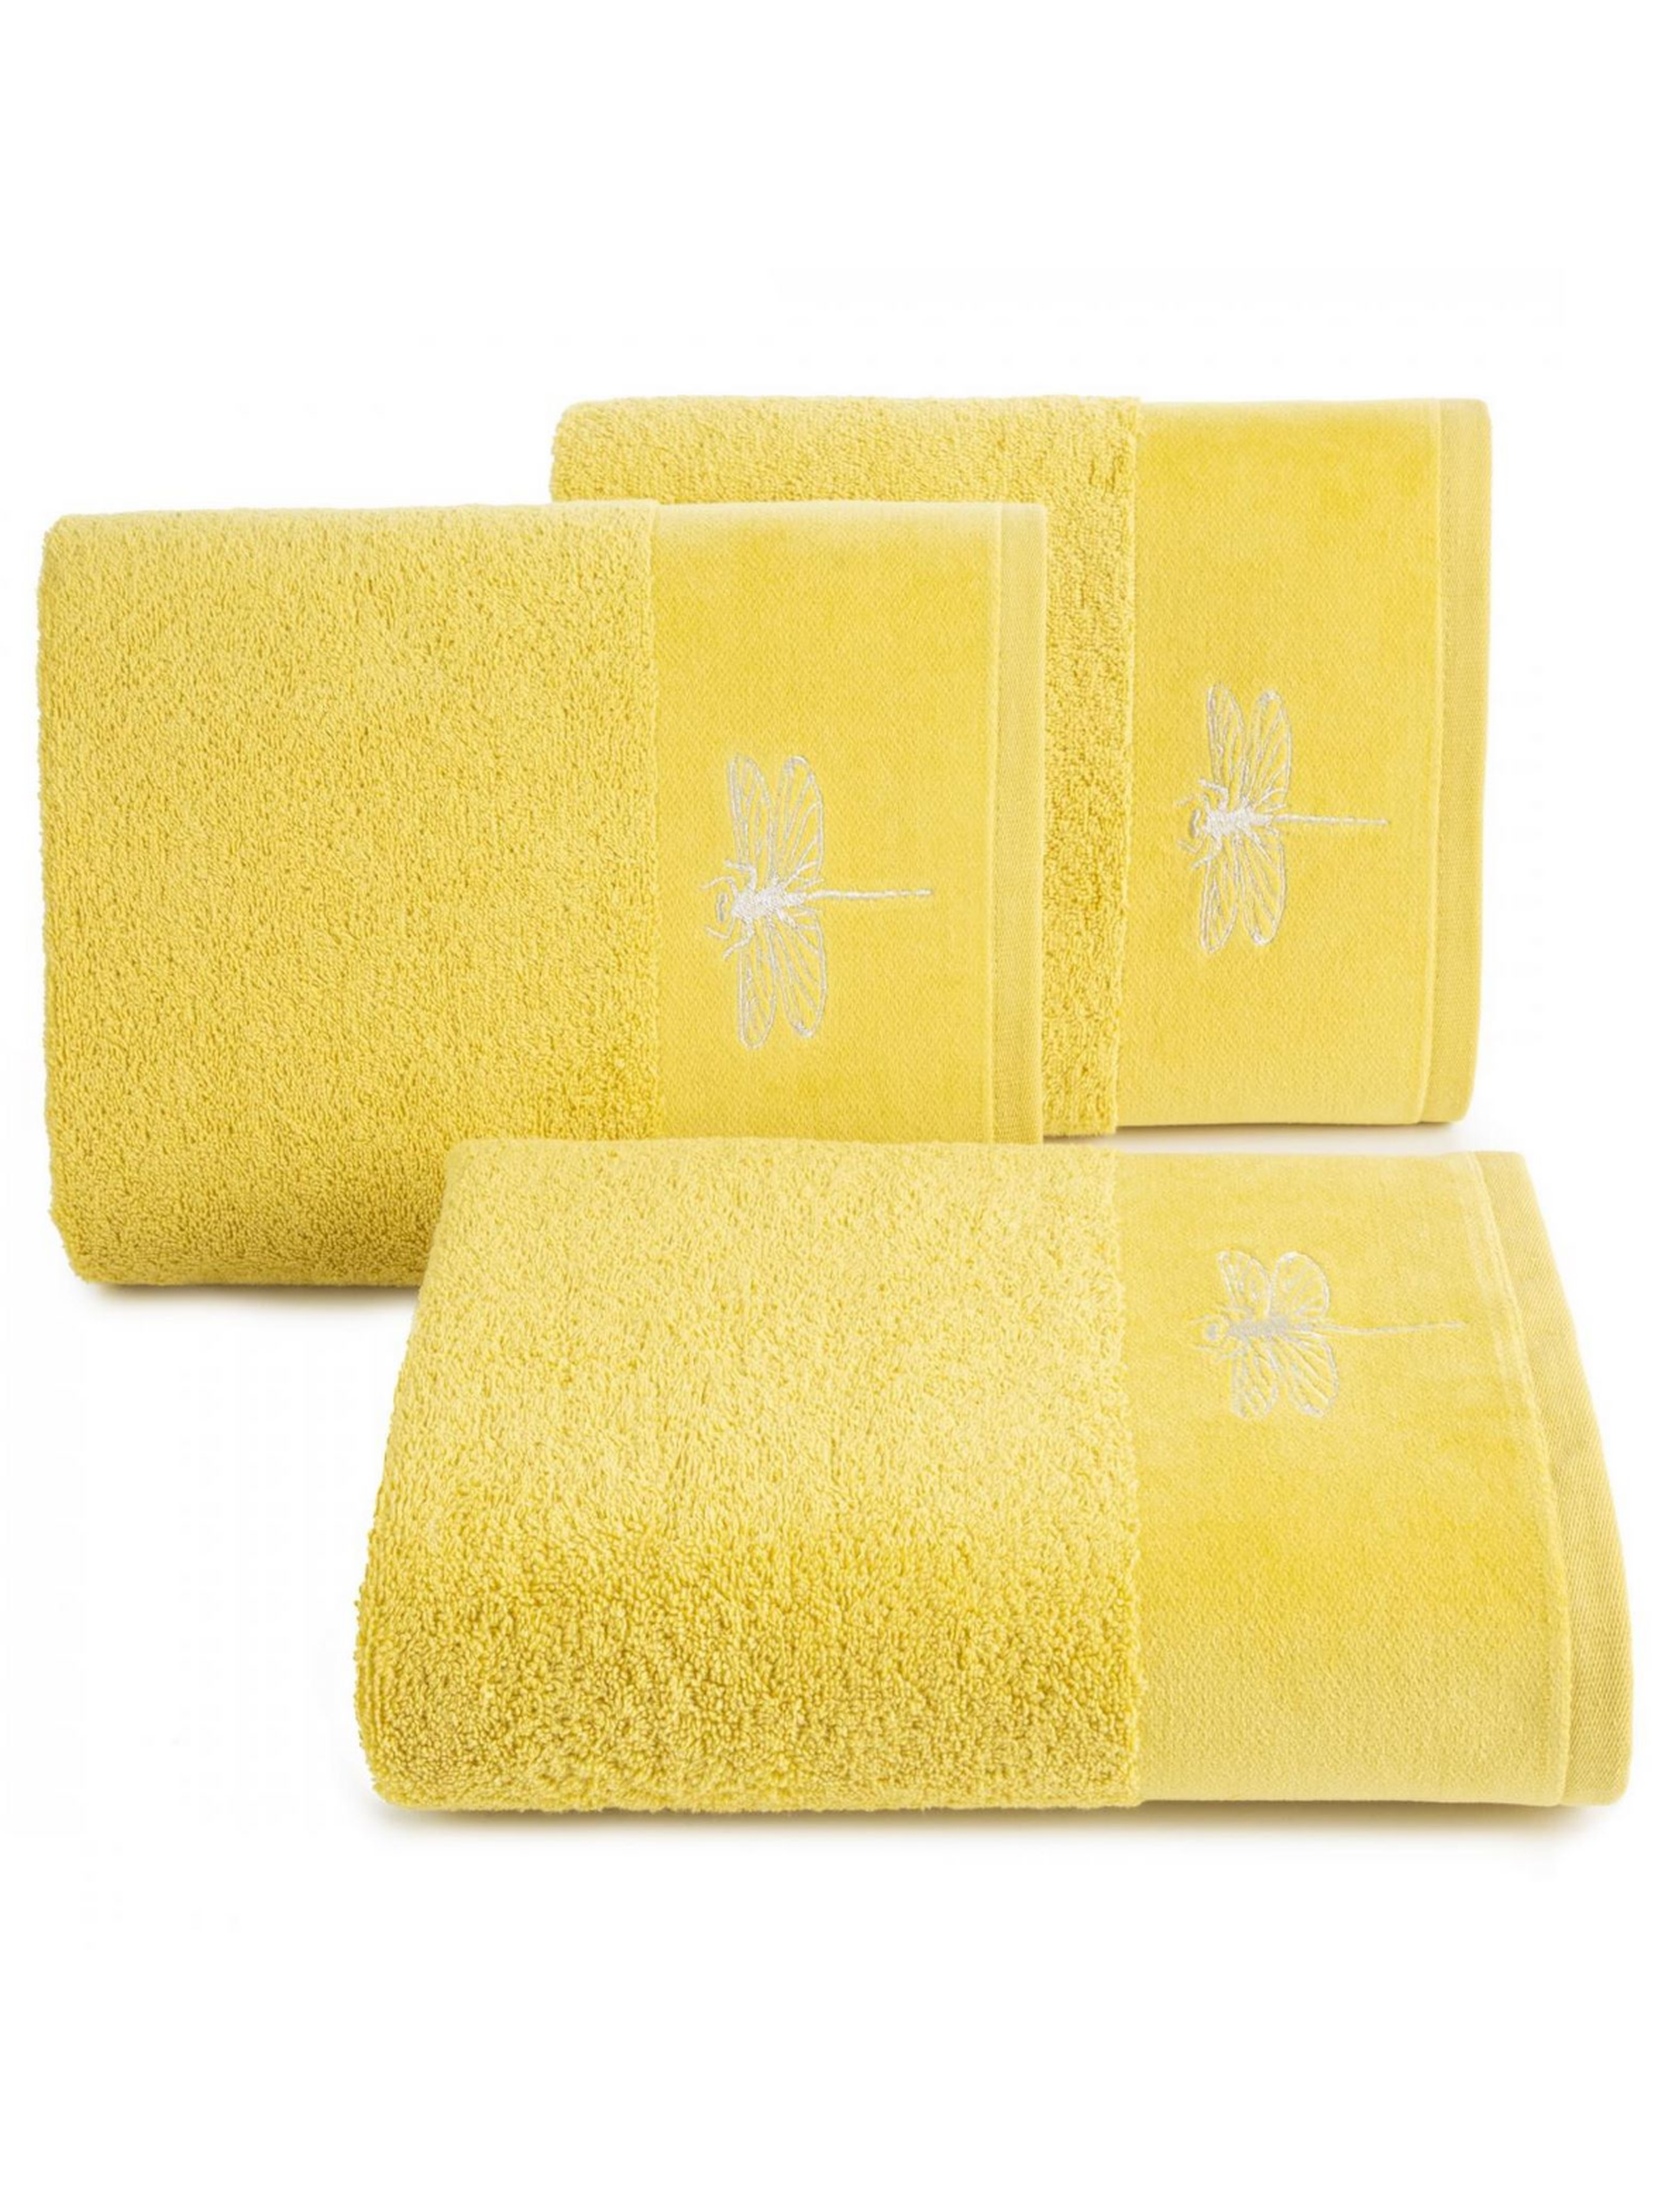 Żółty ręcznik 50x90 cm z haftowaną ważką